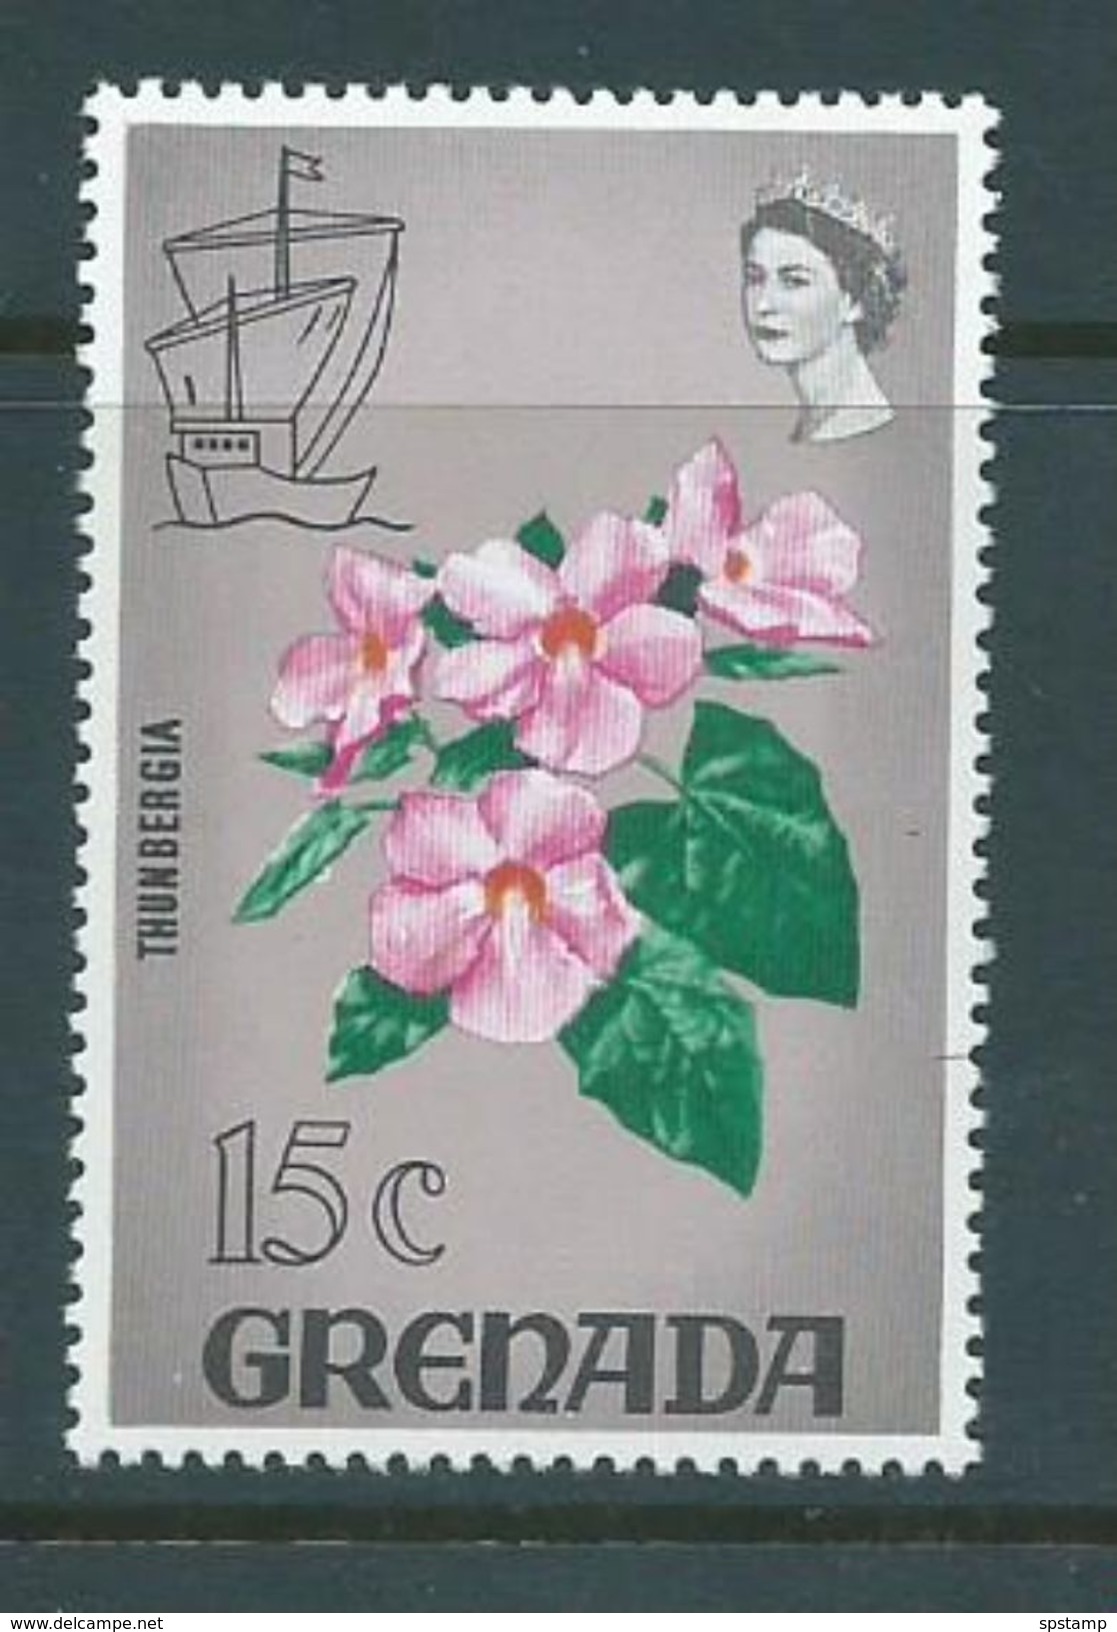 Grenada 1968 Flora & Fauna Definitives 15c Grey Flower Better Value MNH - Grenada (...-1974)